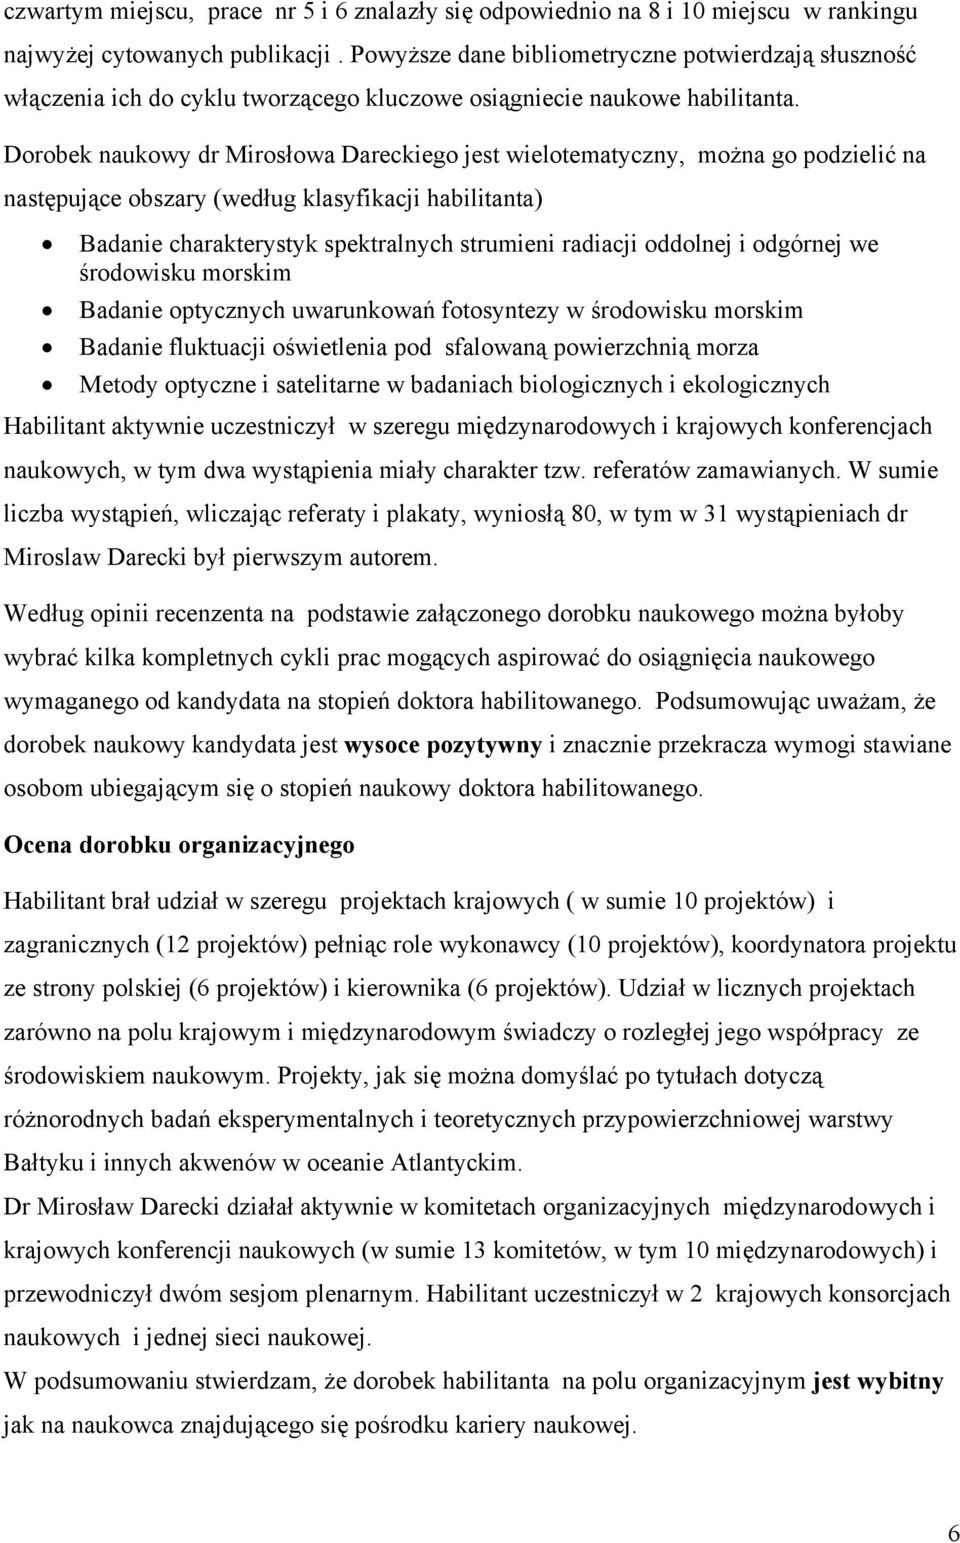 Dorobek naukowy dr Mirosłowa Dareckiego jest wielotematyczny, można go podzielić na następujące obszary (według klasyfikacji habilitanta) Badanie charakterystyk spektralnych strumieni radiacji